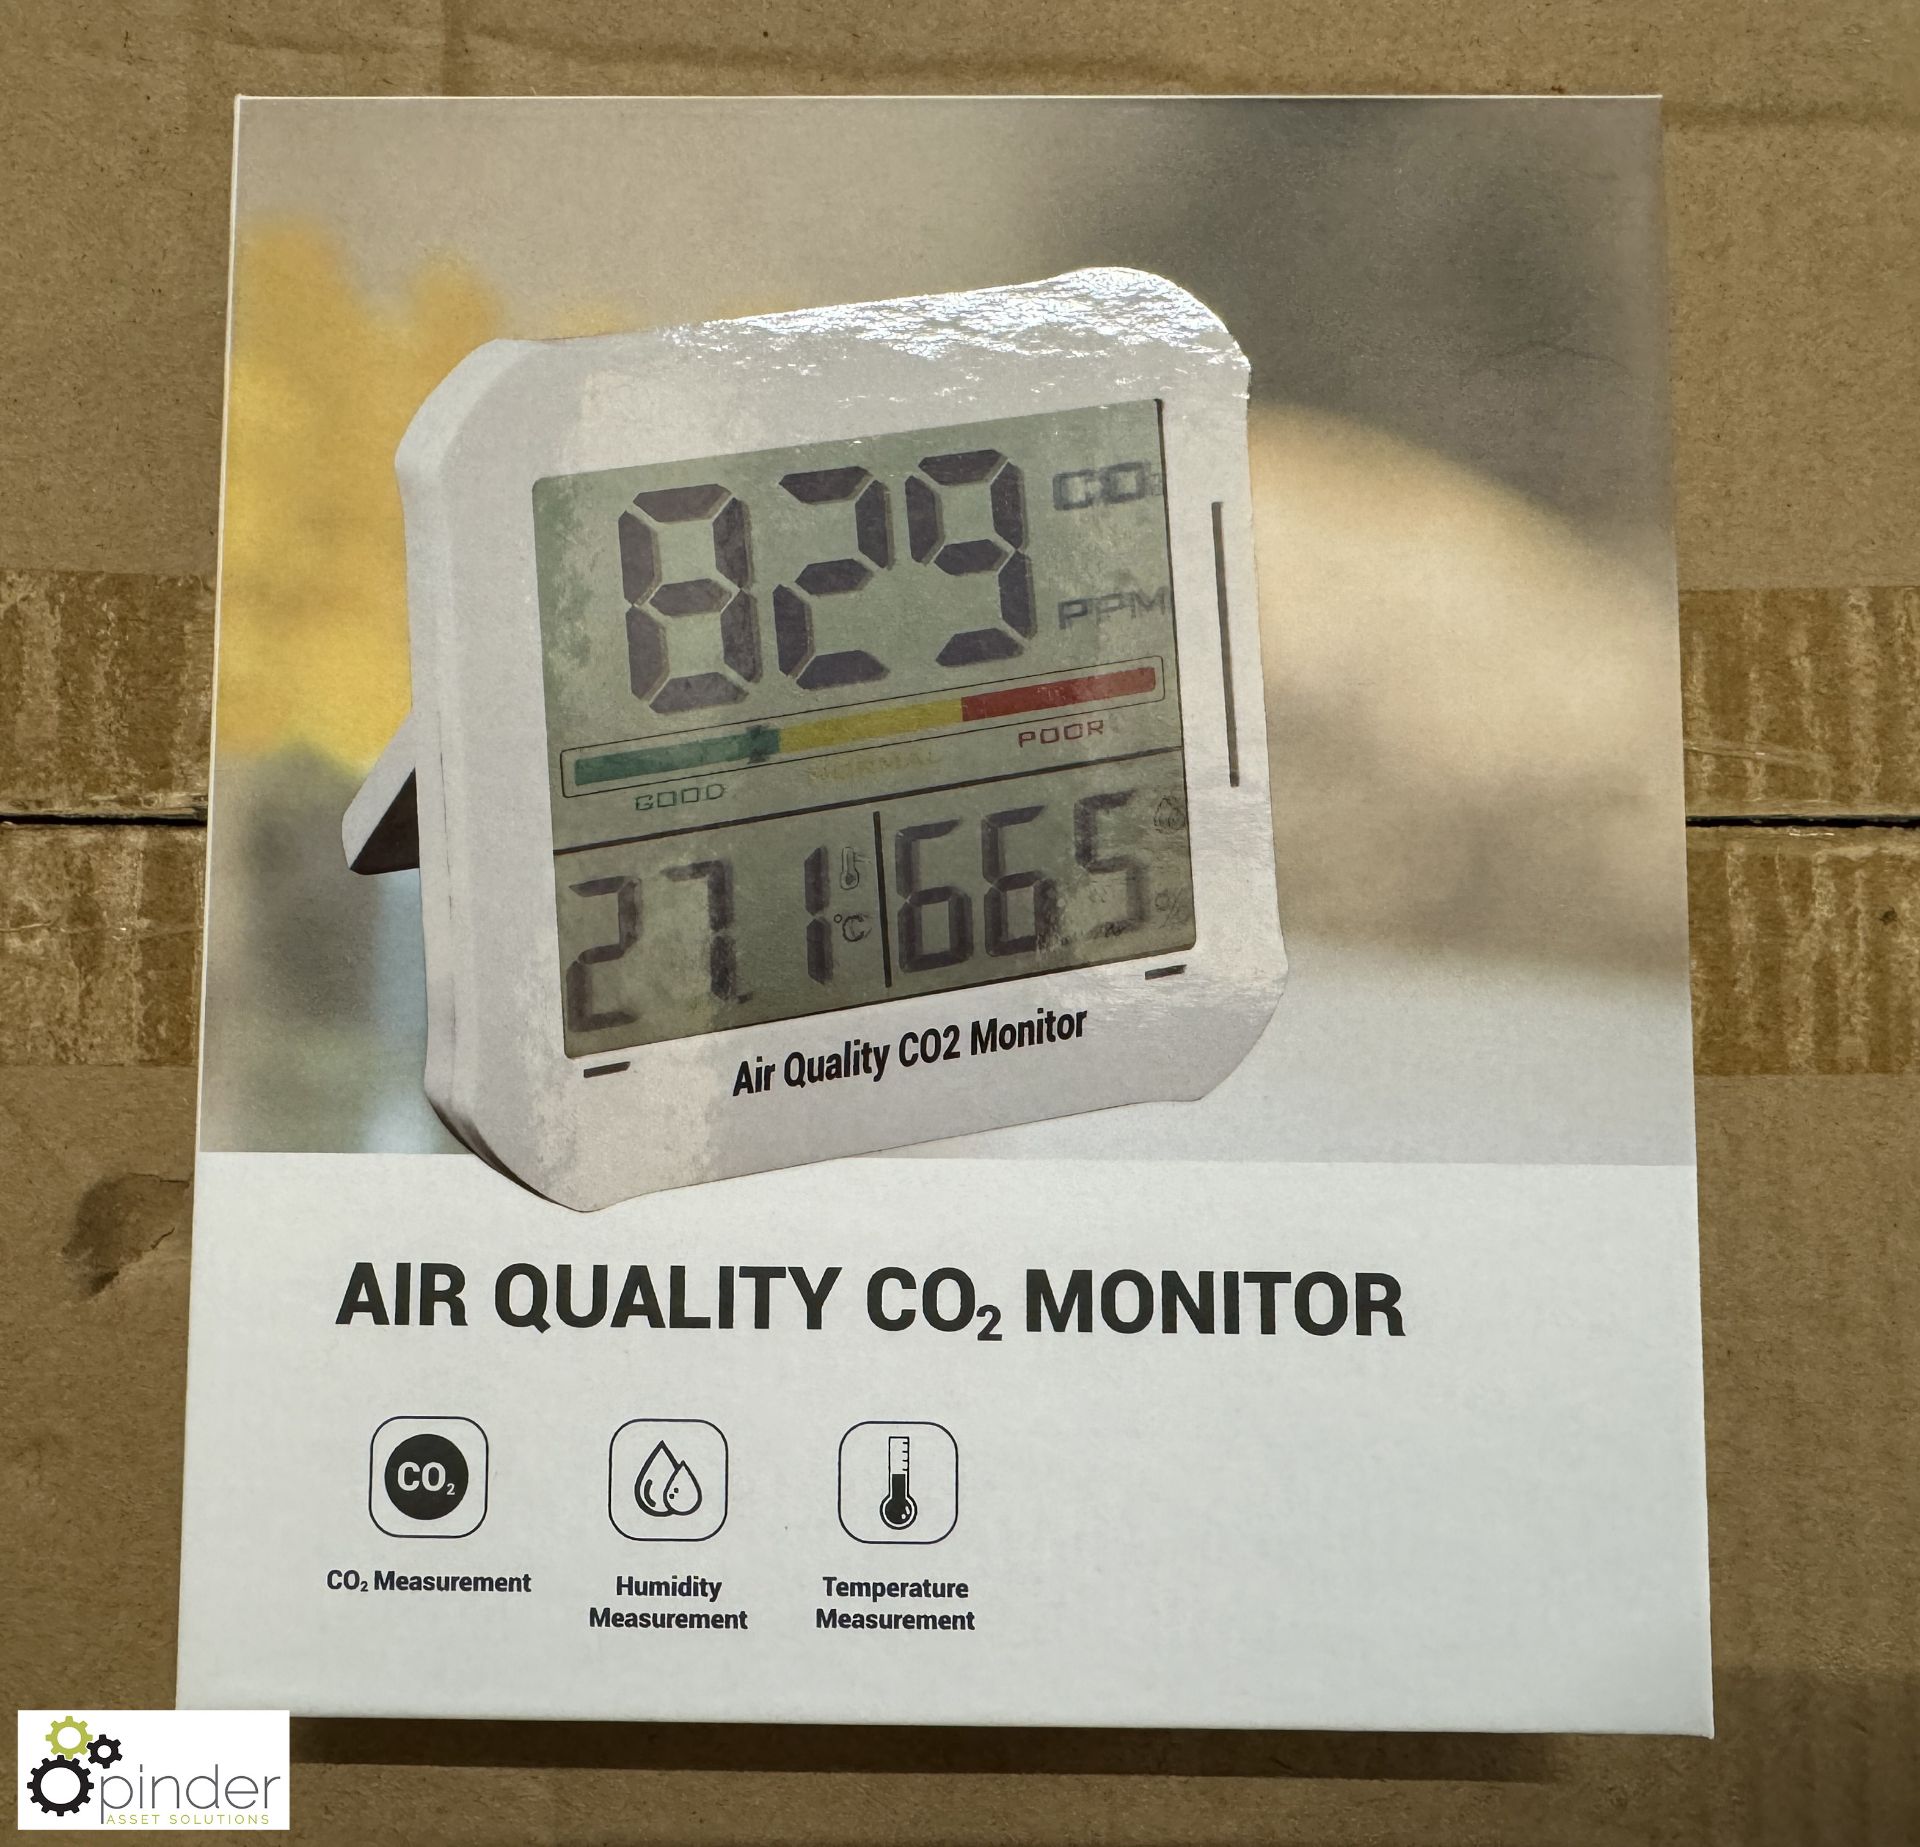 7 cartons Air Quality Co2 Monitors, approx. 40 per carton